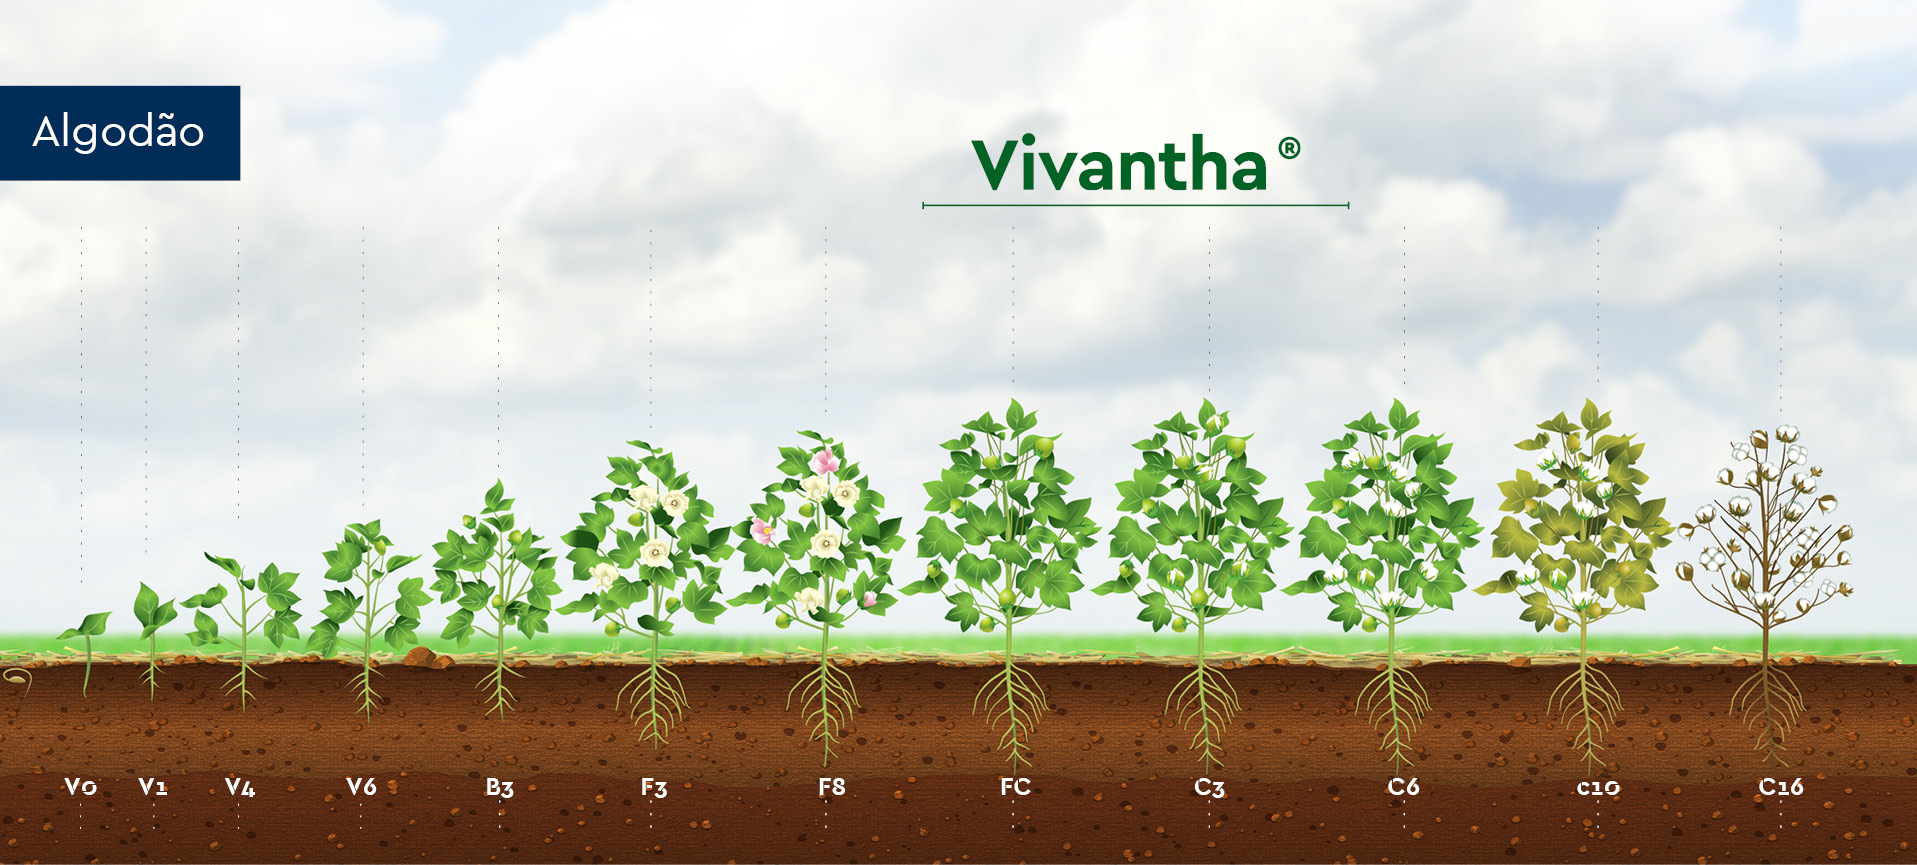 Posicionamento técnico do inseticida Vivantha para a cultura do algodão